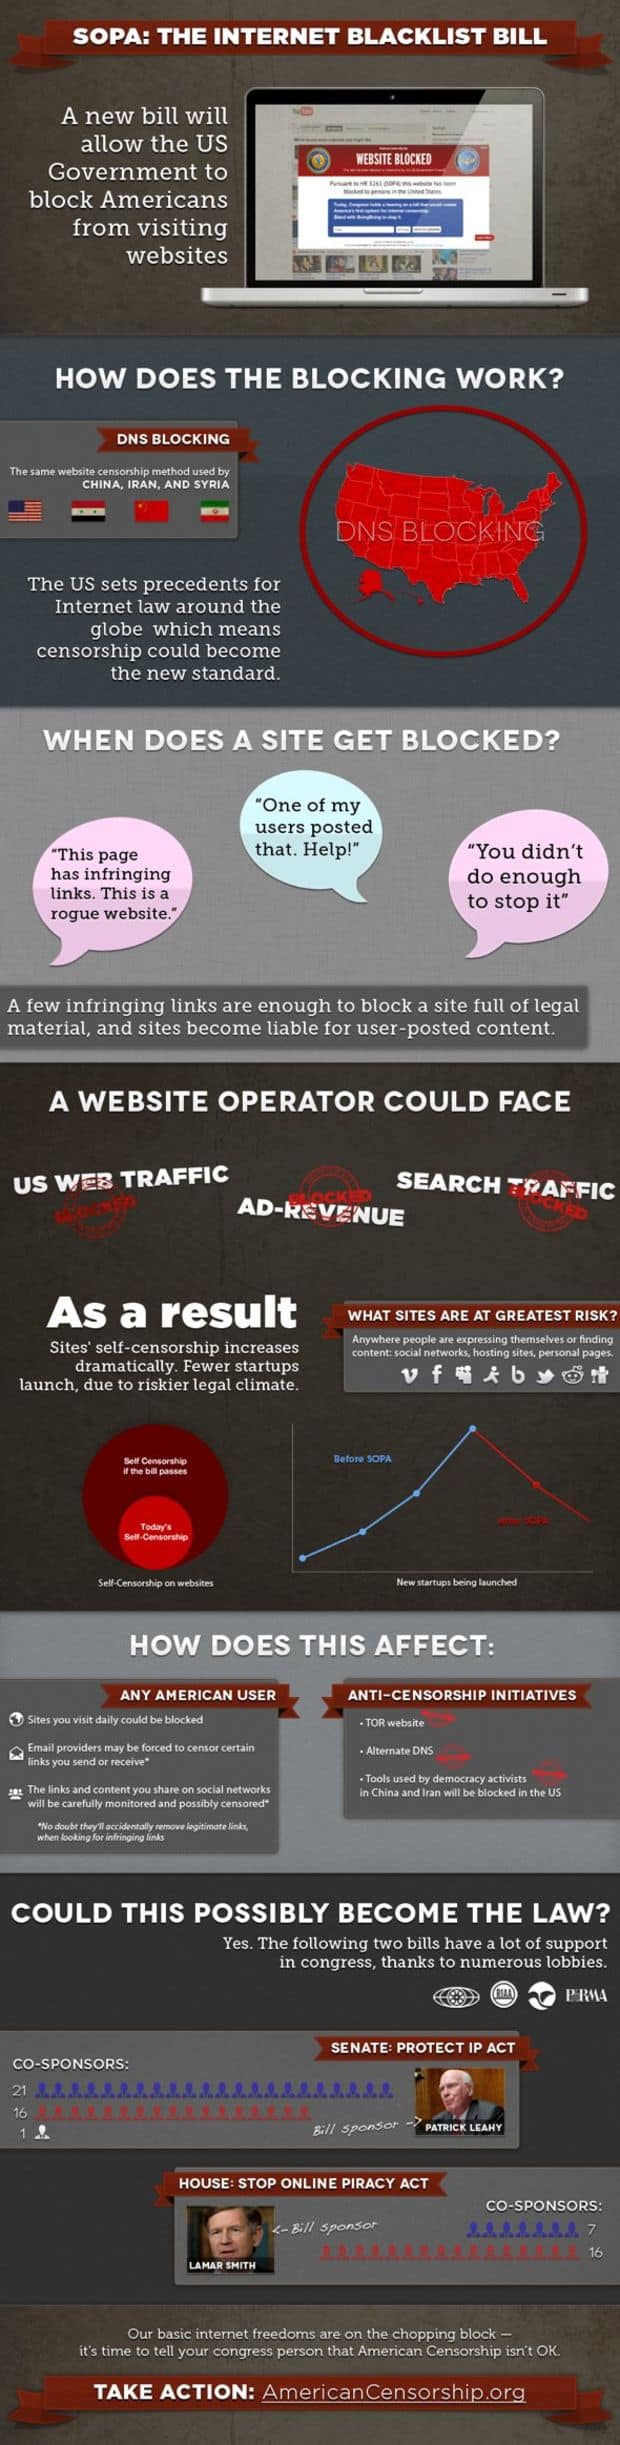 Internet Blacklist Bill Infographic